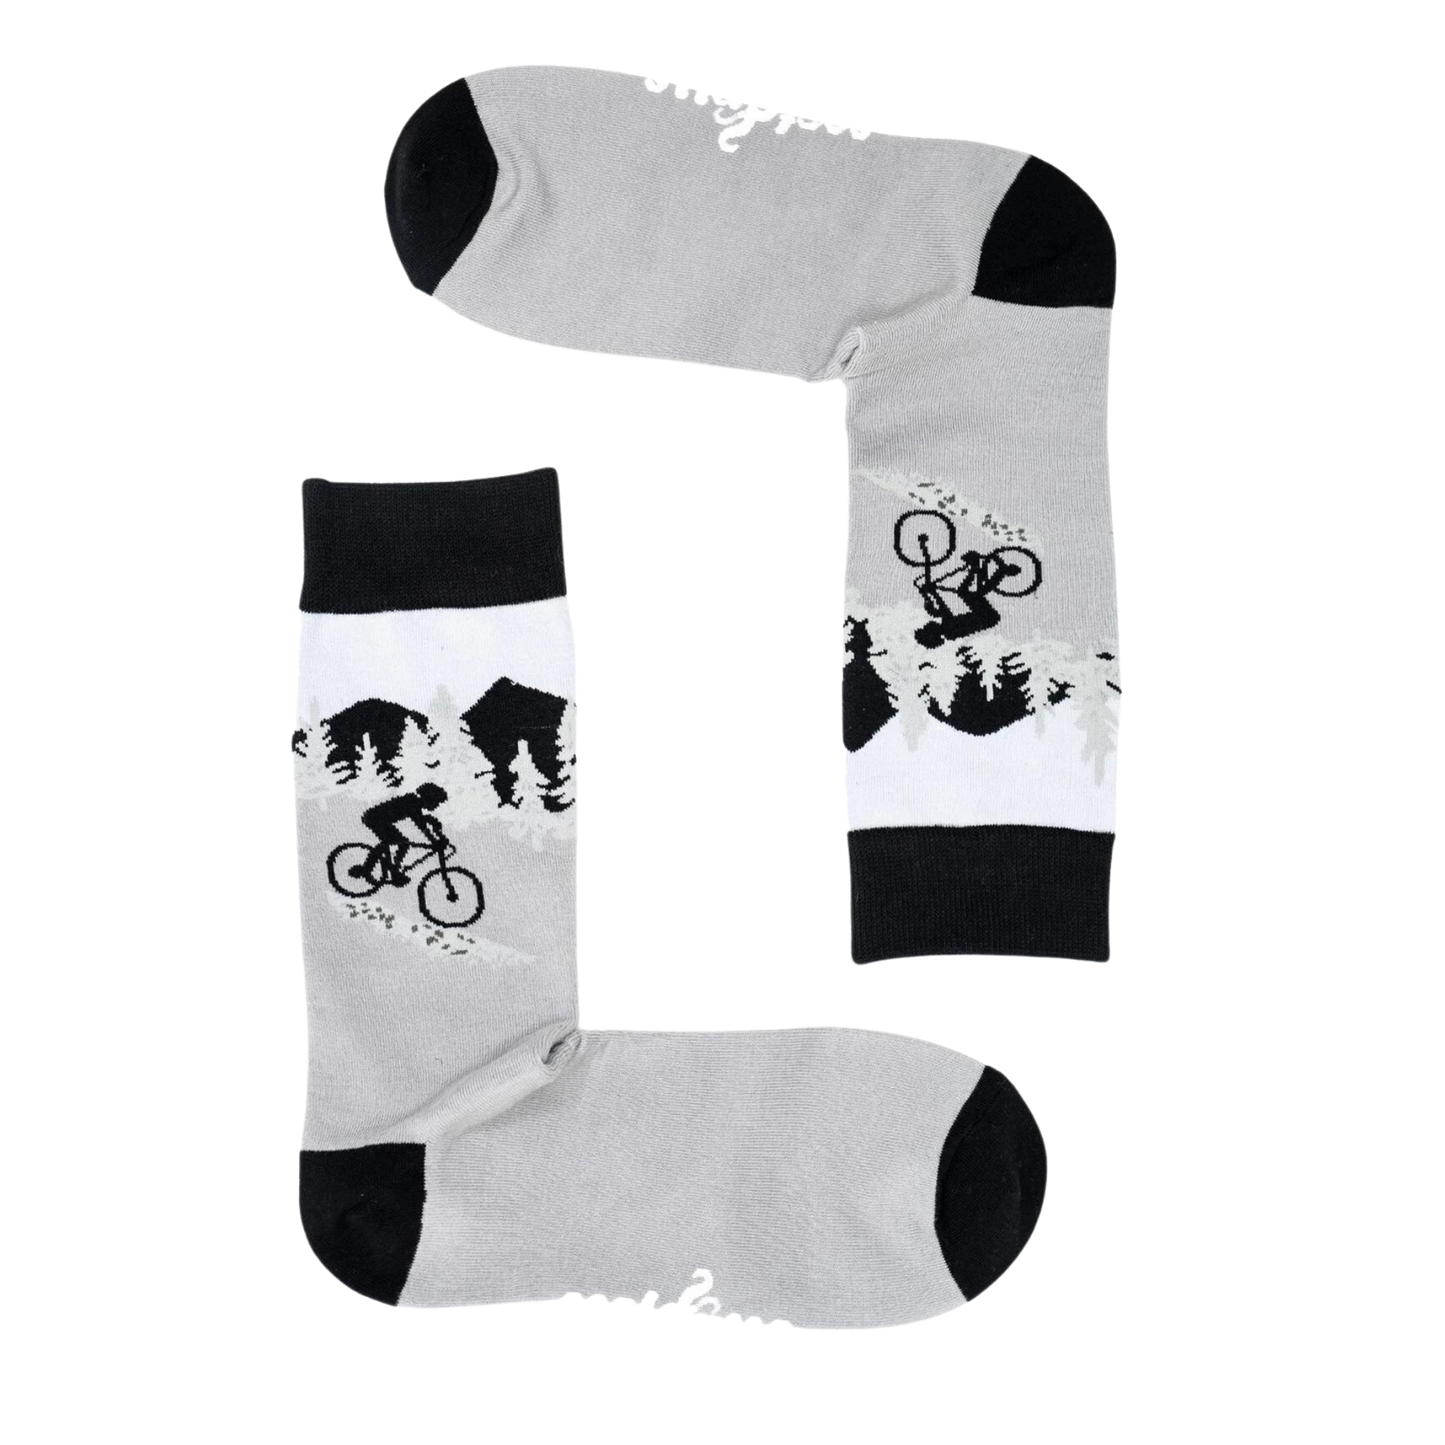 Vicious Cycle Socks